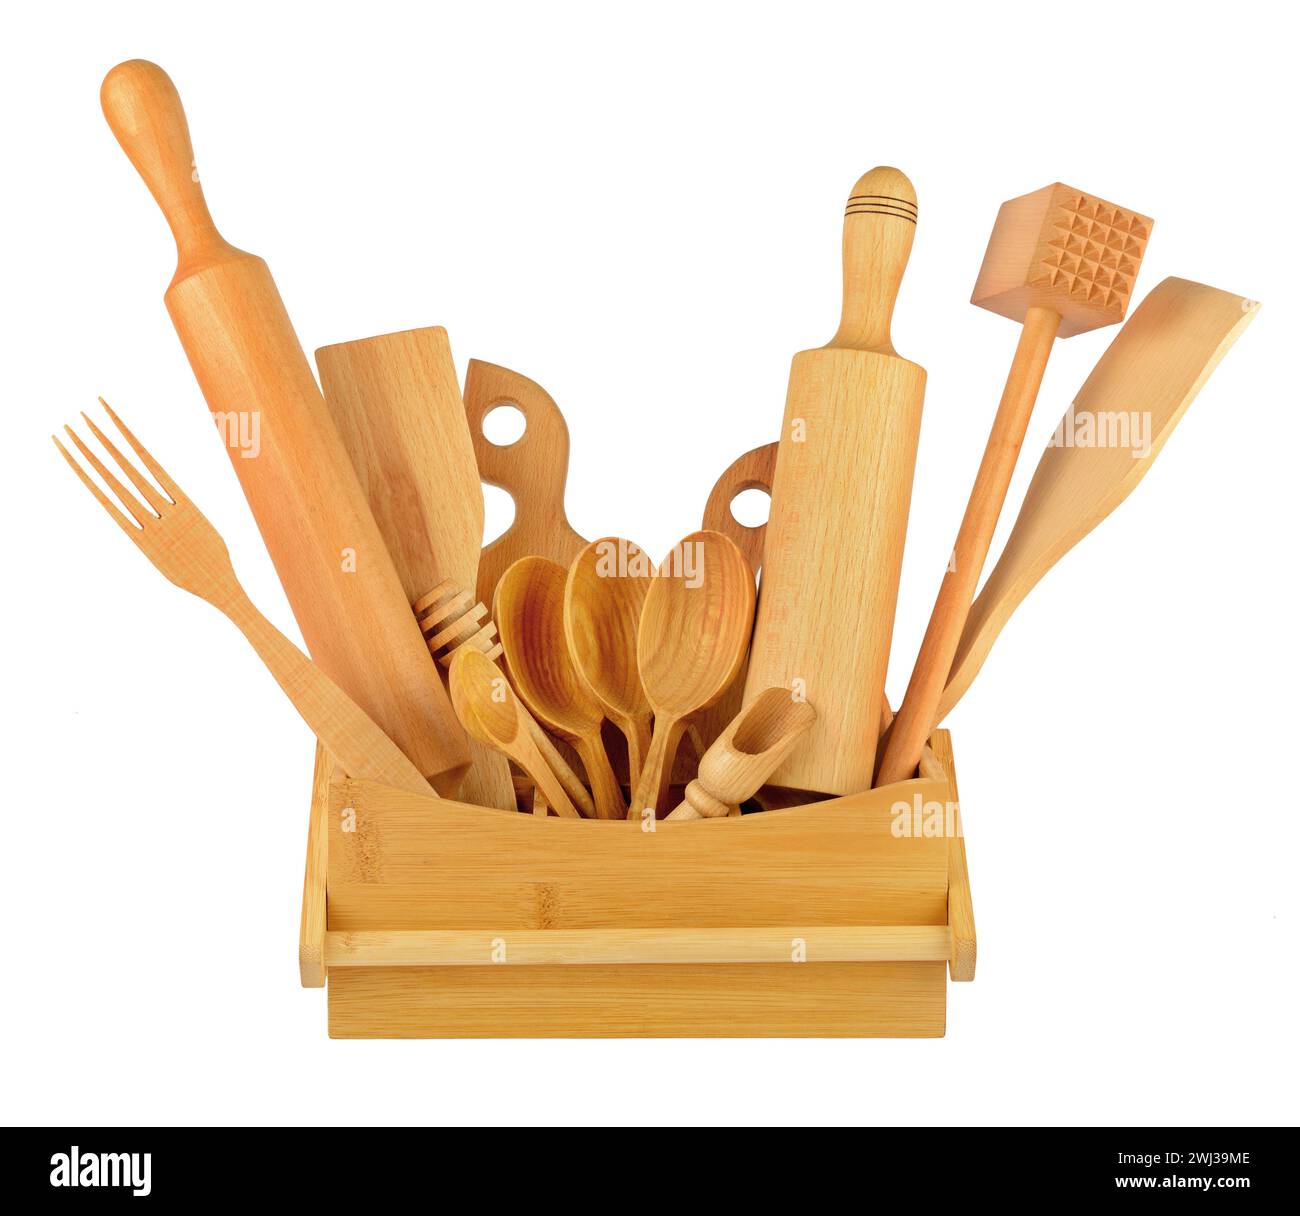 Ustensiles de cuisine en bois (pelle, fourchette, cuillère, etc.) isolés sur fond blanc. Banque D'Images